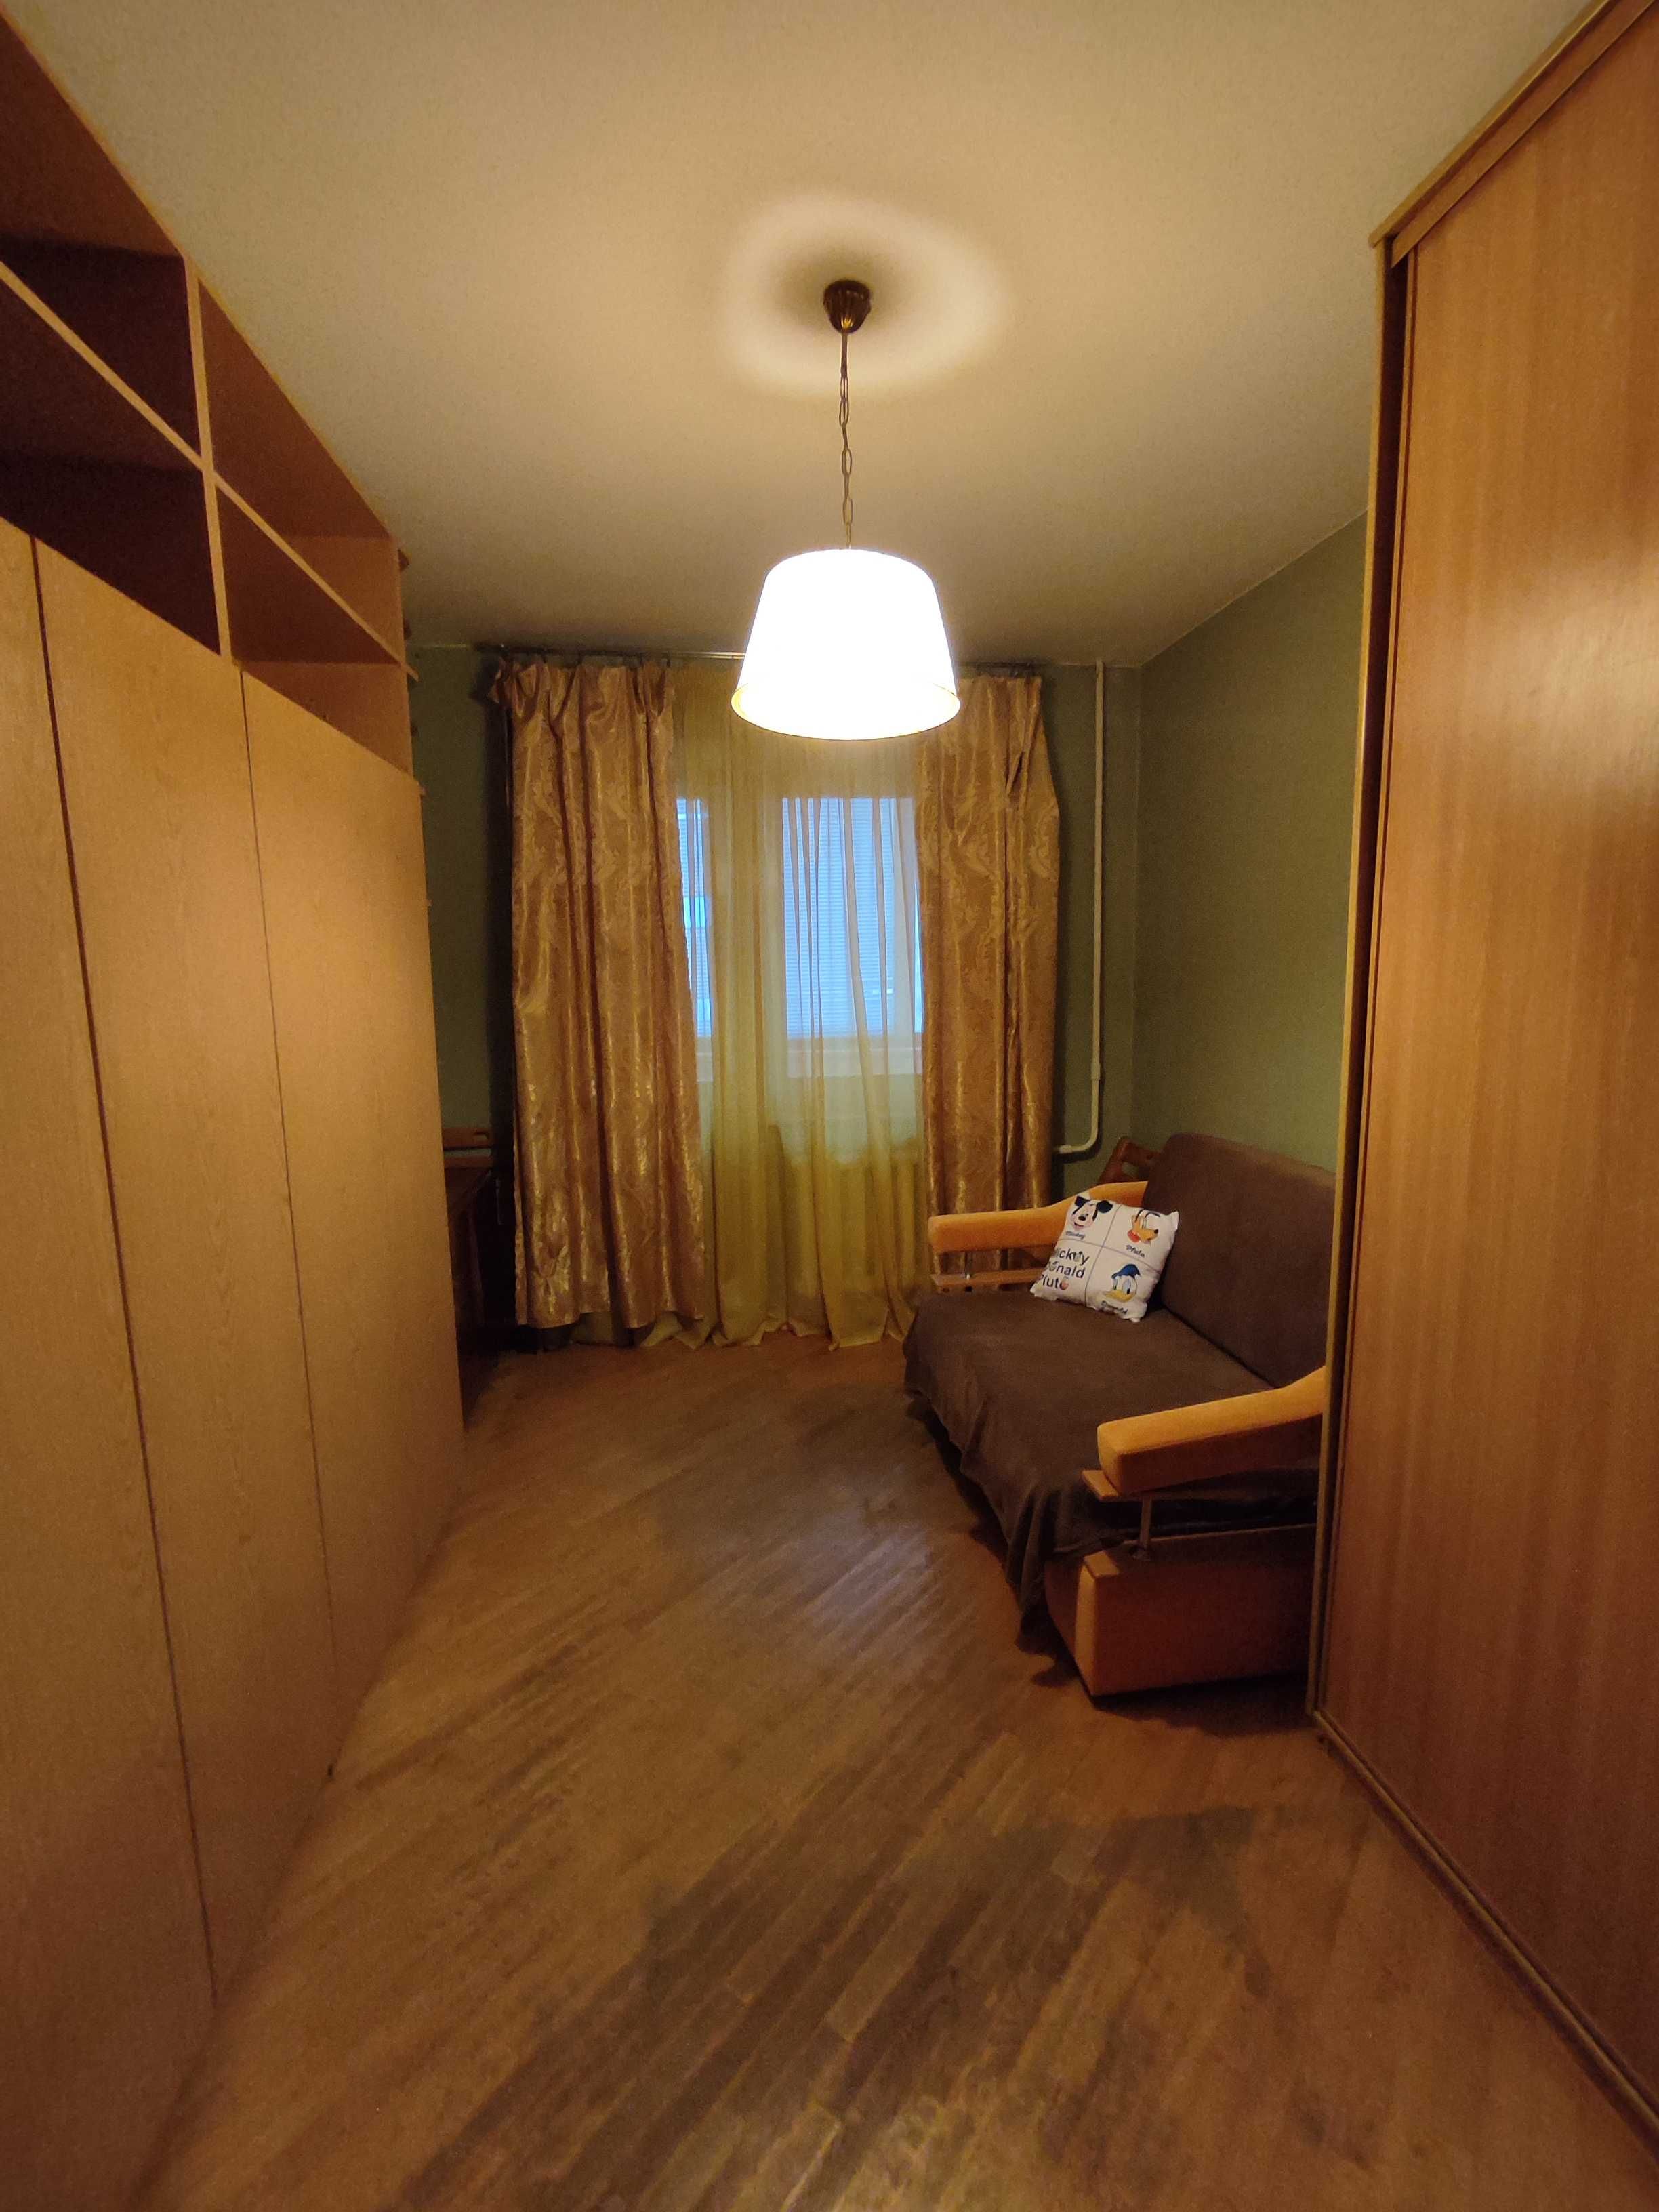 2 Кімнатна 55 квартира в Оболонському районі.